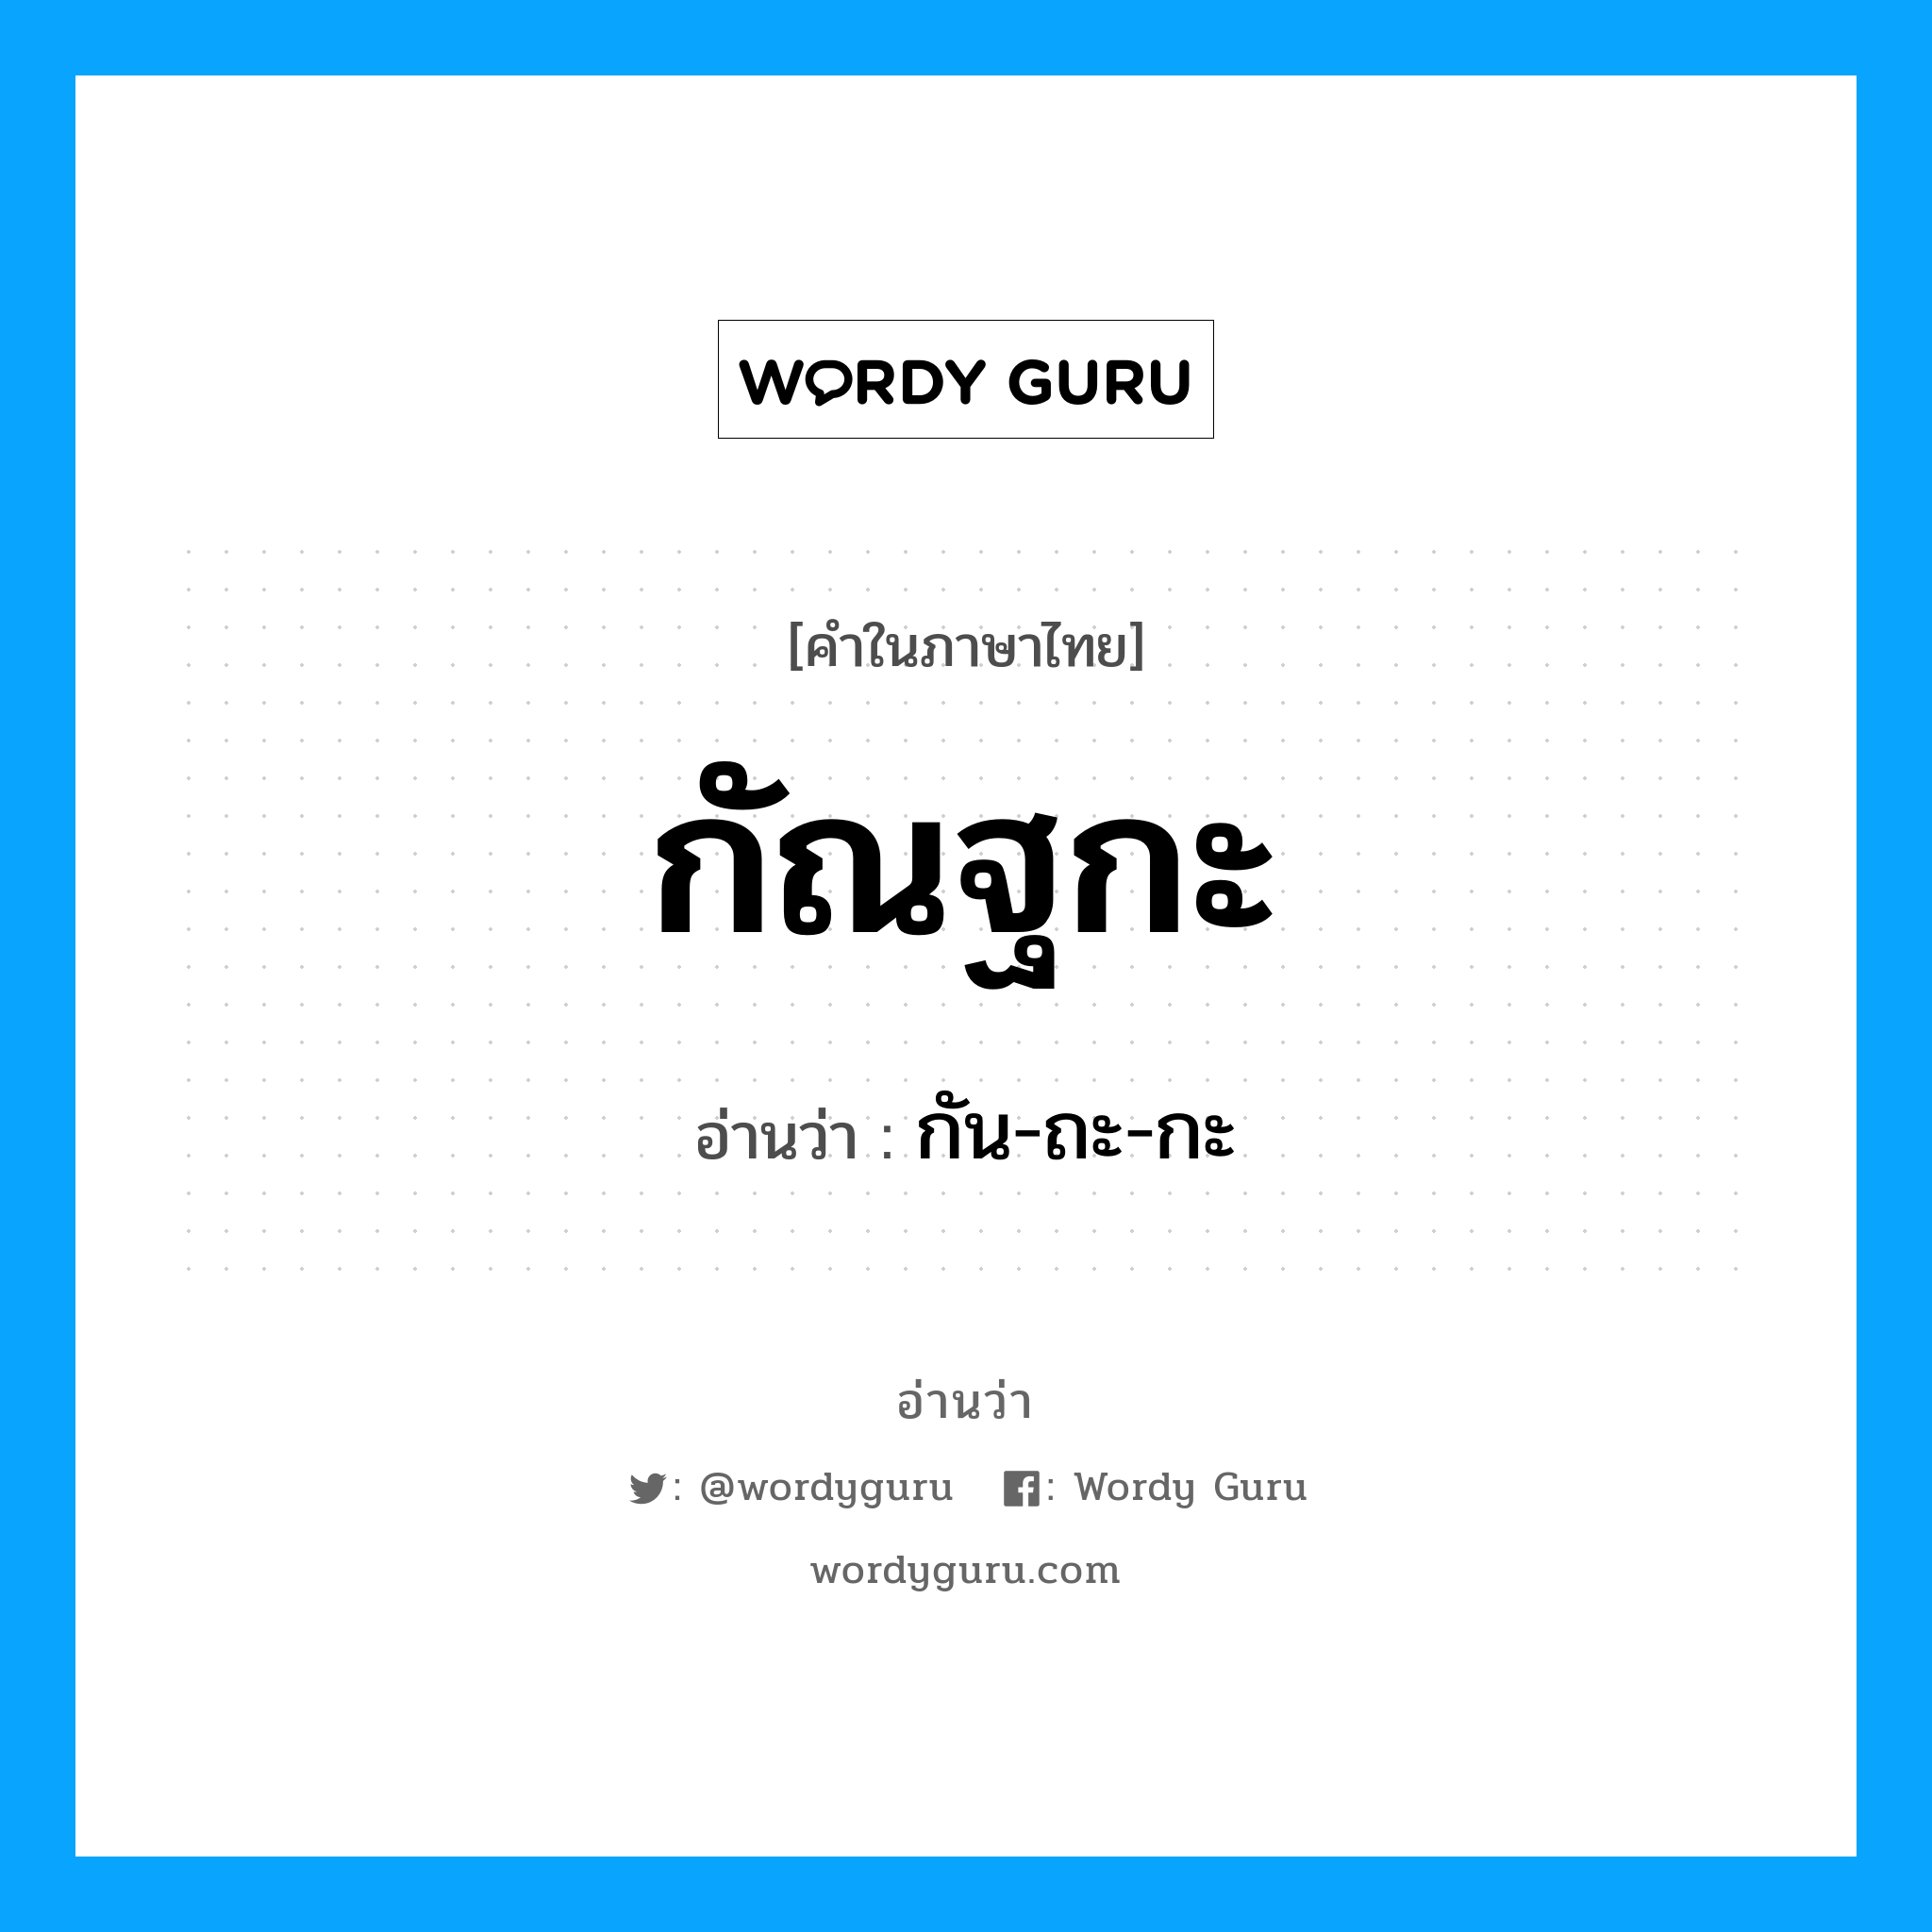 กัน-ถะ-กะ เป็นคำอ่านของคำไหน?, คำในภาษาไทย กัน-ถะ-กะ อ่านว่า กัณฐกะ